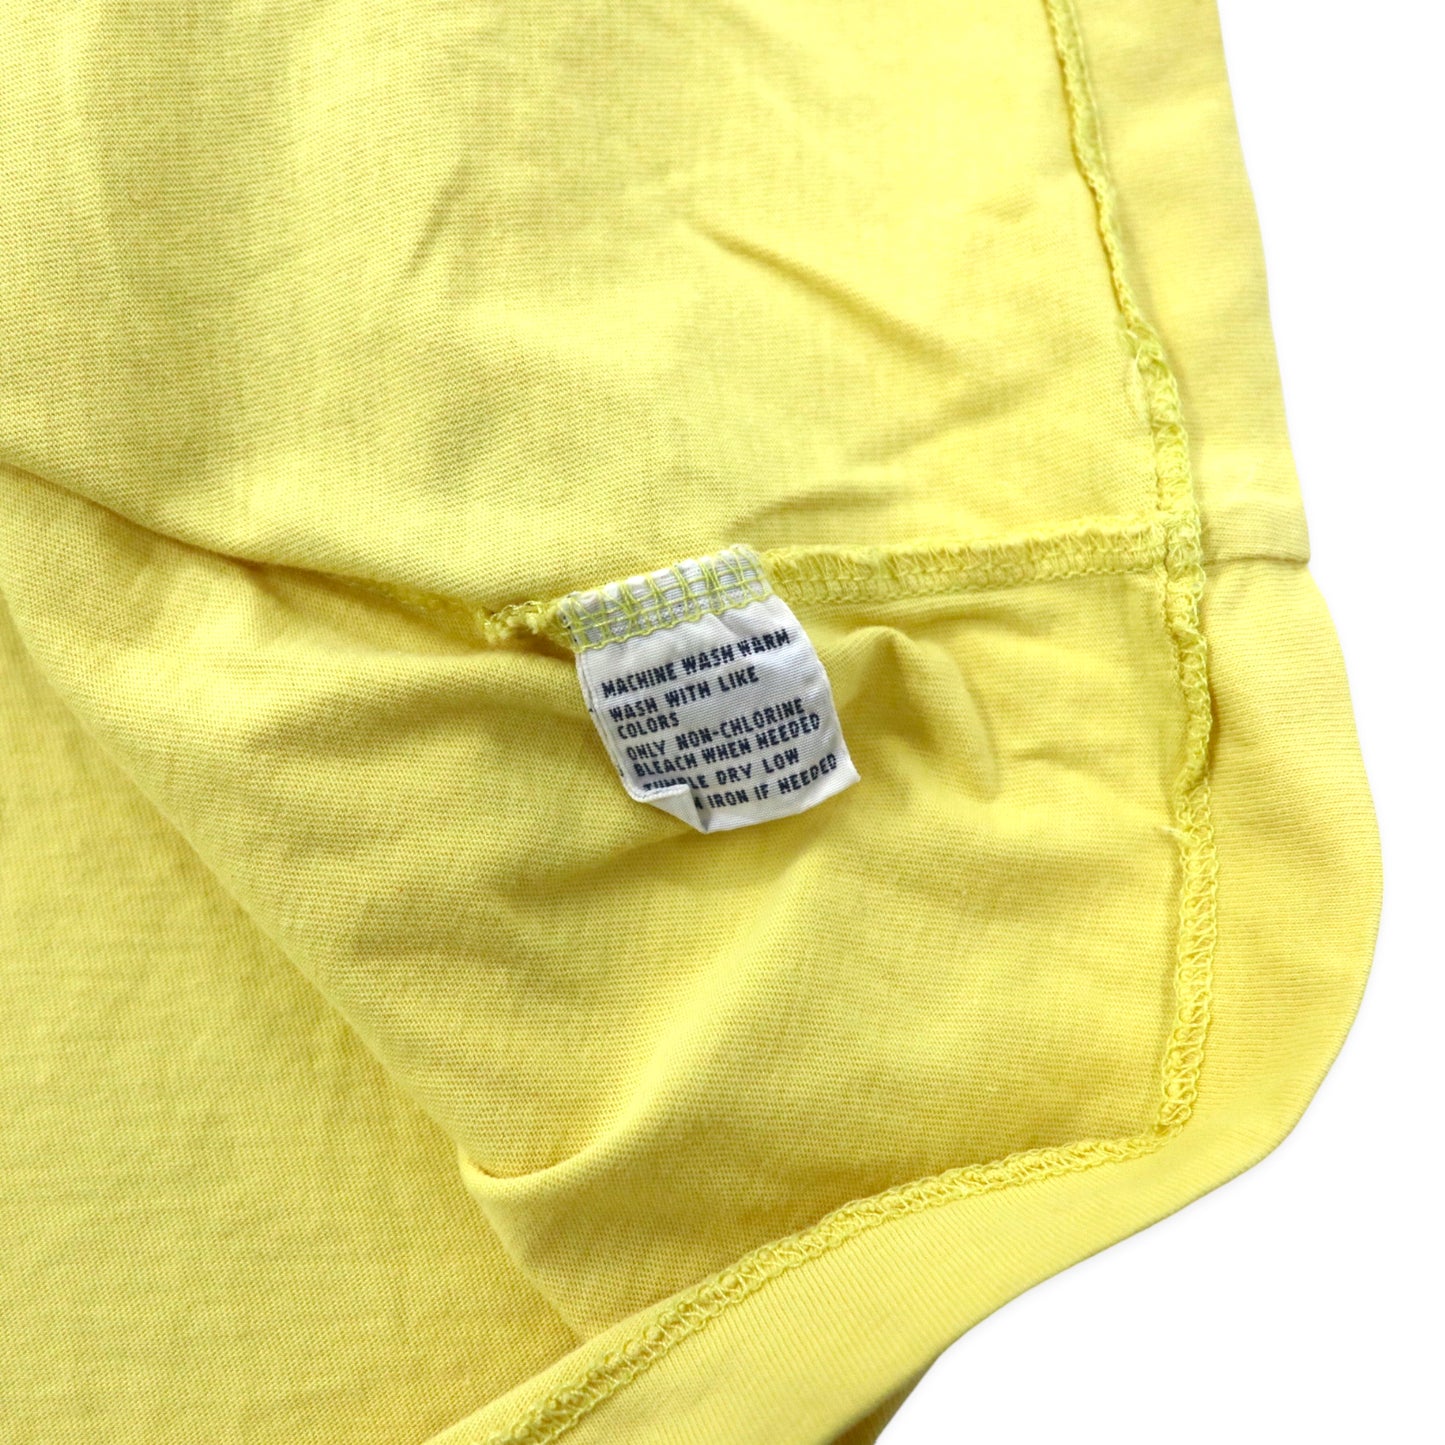 Polo by Ralph Lauren VネックTシャツ XXL イエロー コットン スモールポニー刺繍 ビッグサイズ